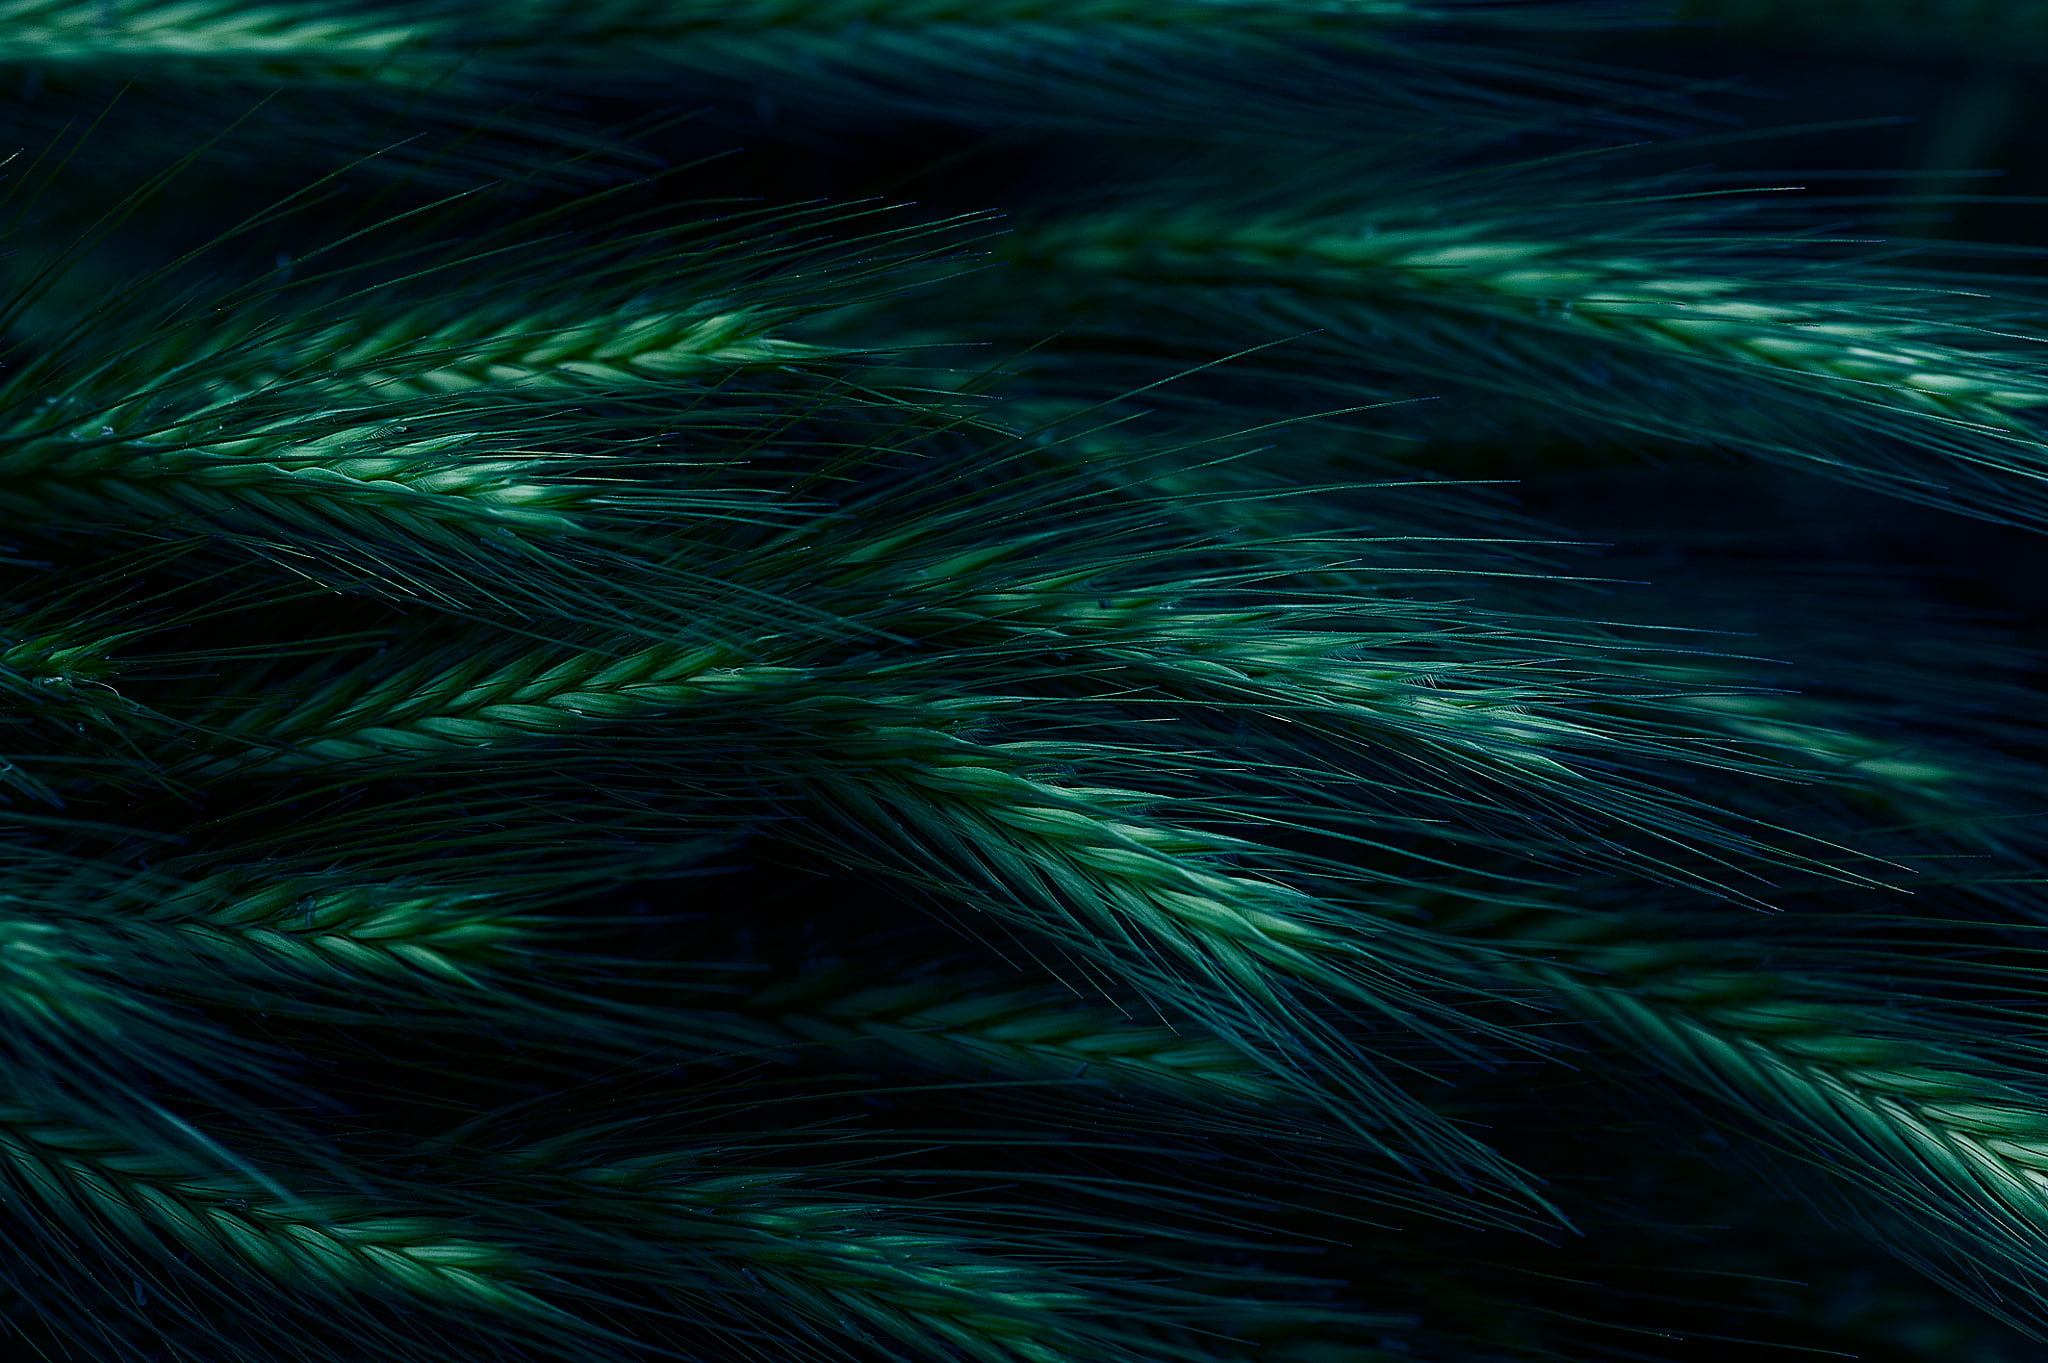 green wheat grass digital wallpaper, spikelet, dark, nature, abstract